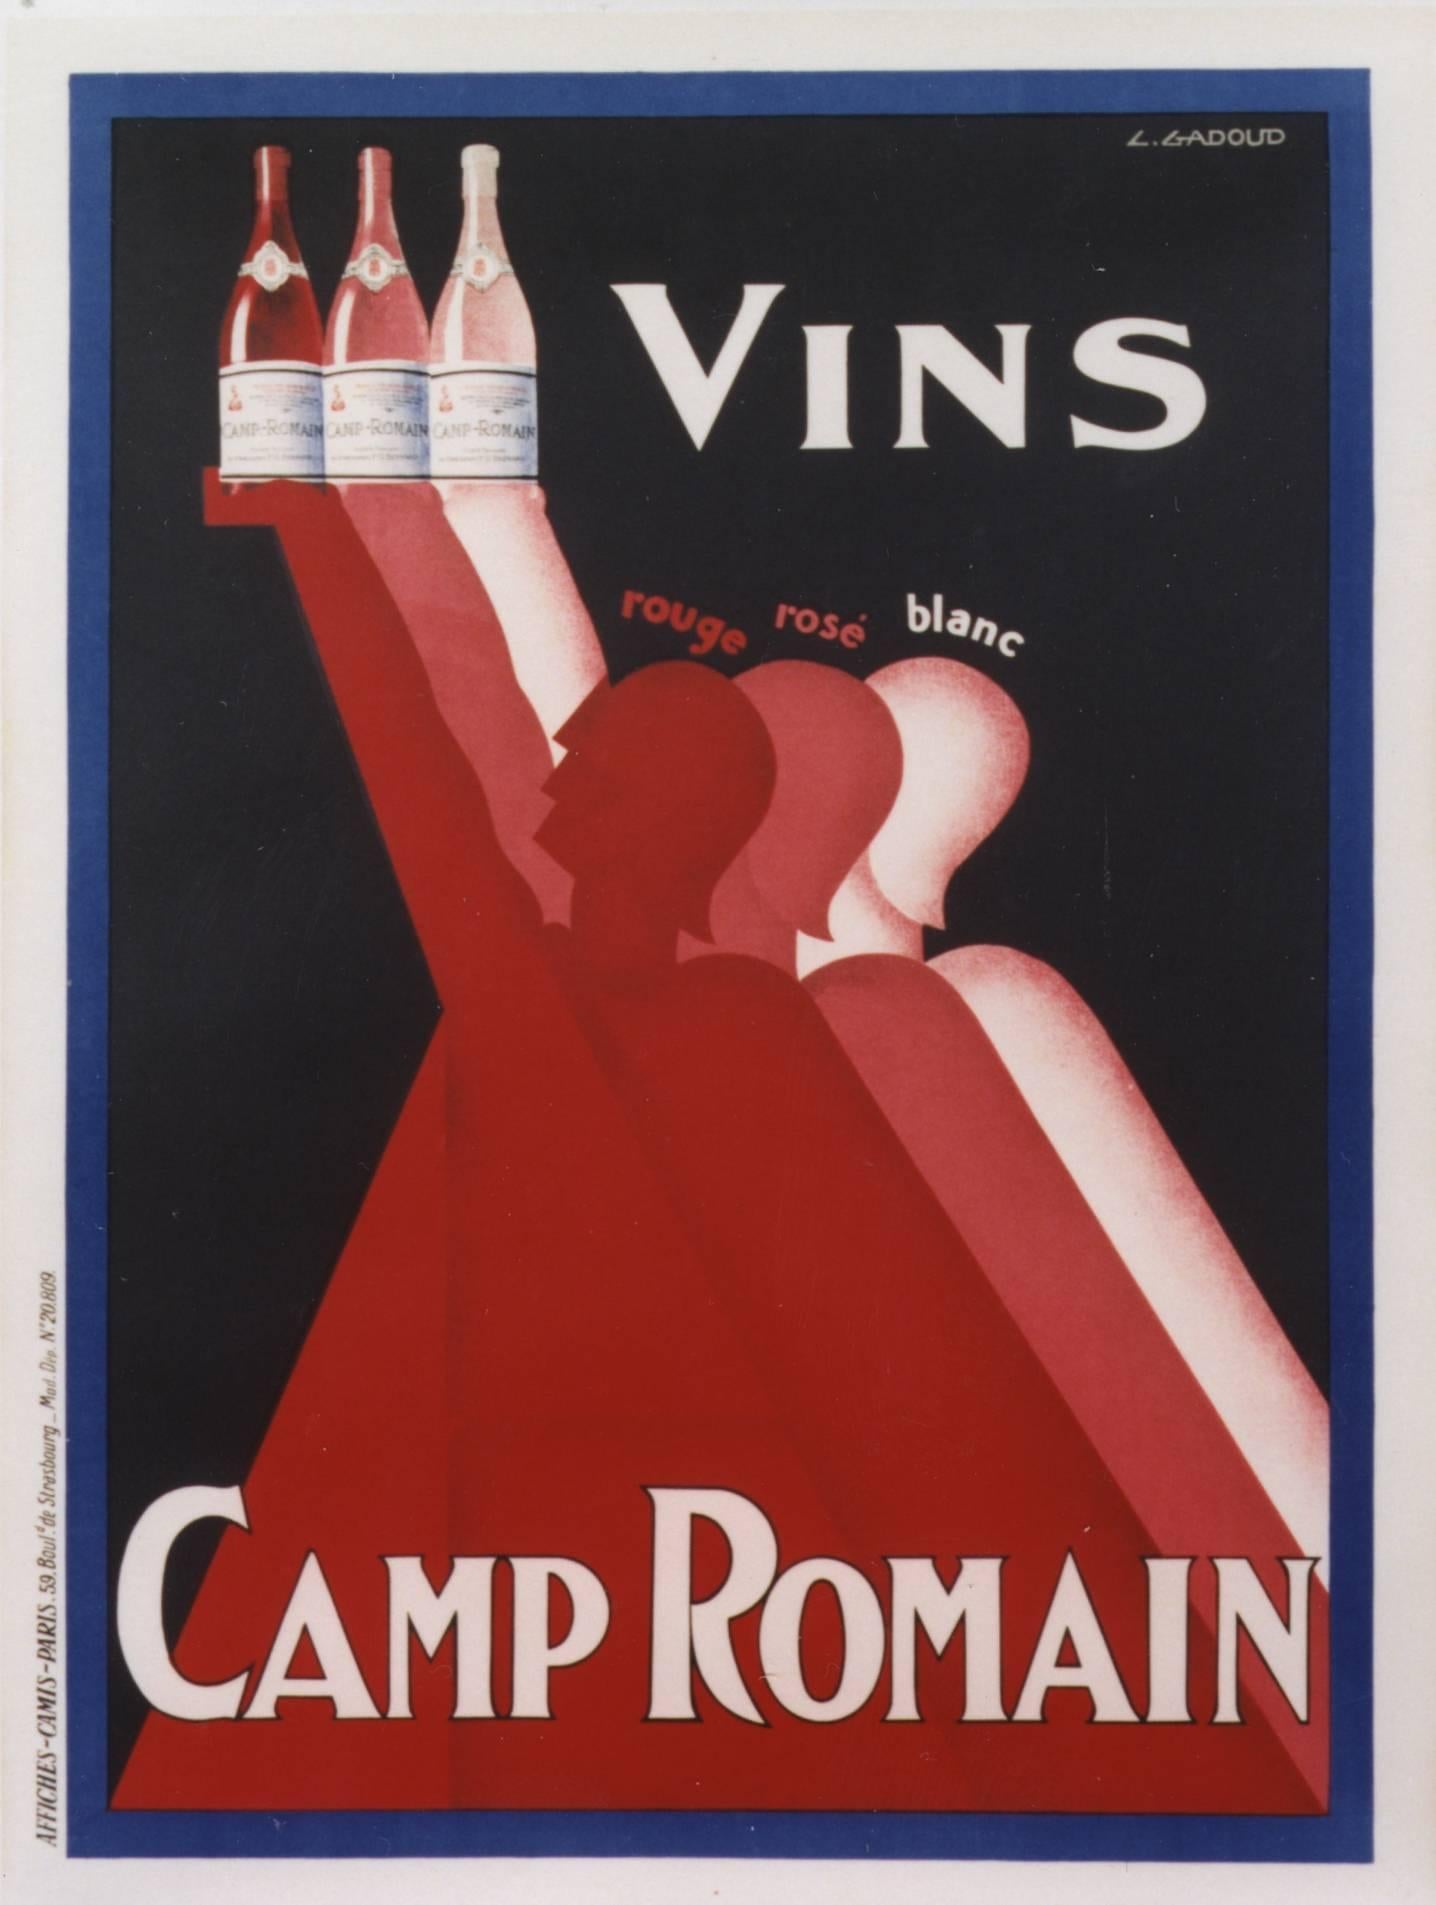 CLAUDE GADOUD Figurative Print - Vins Camp Romain